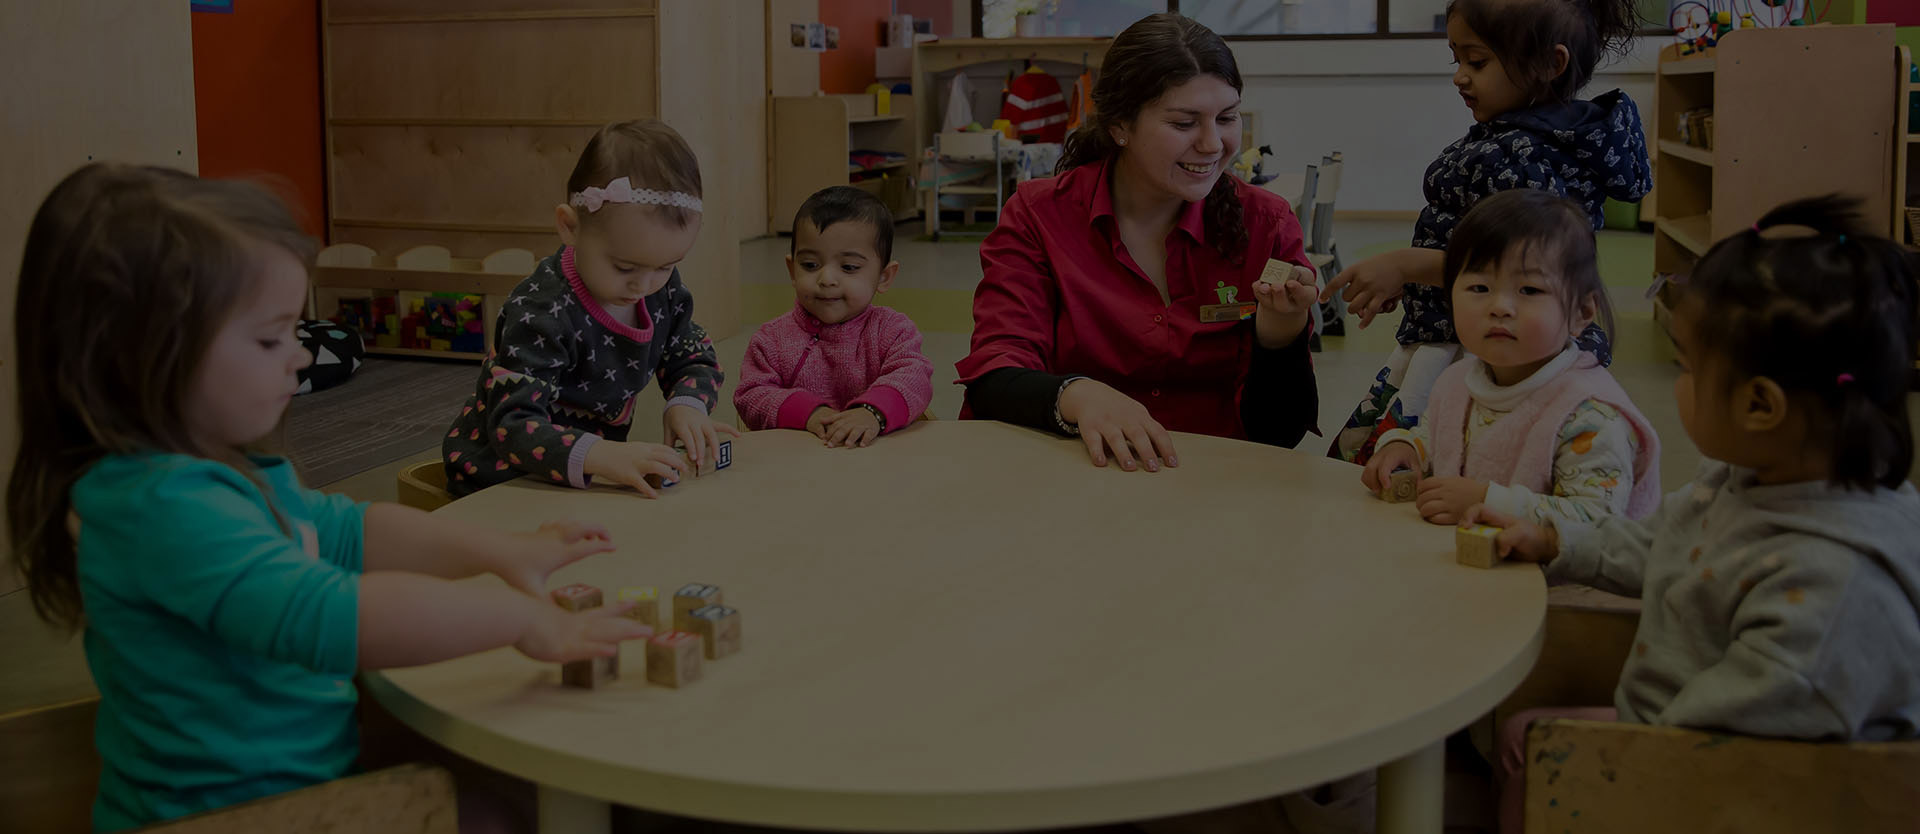 Reggio Emilia Childcare Centres | How Reggio Emilia Bridges the Gap Between Childcare and Home with Documentation